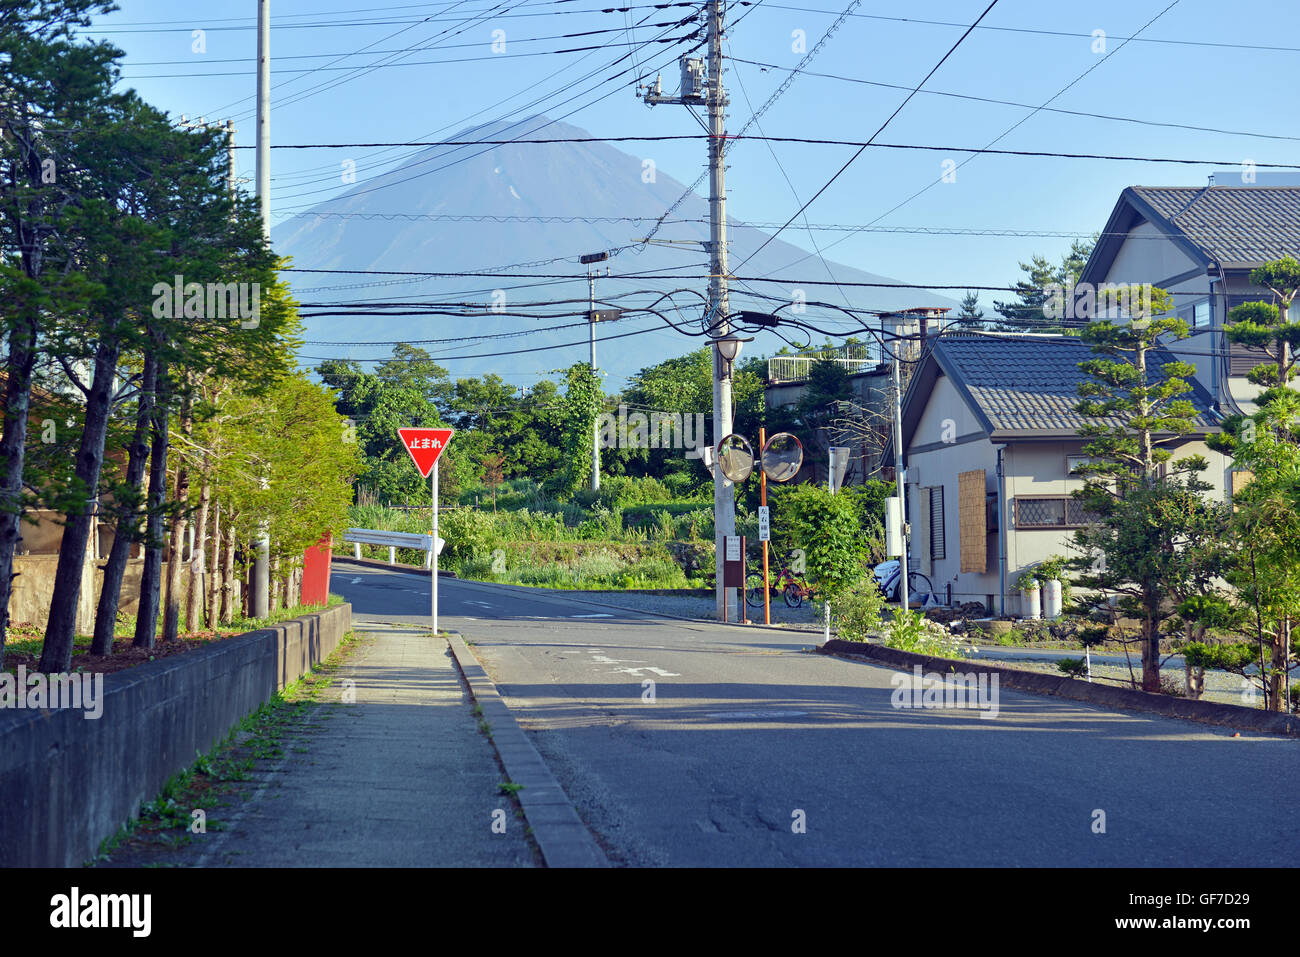 Vulkan Mount Fuji, Japan Stockfoto